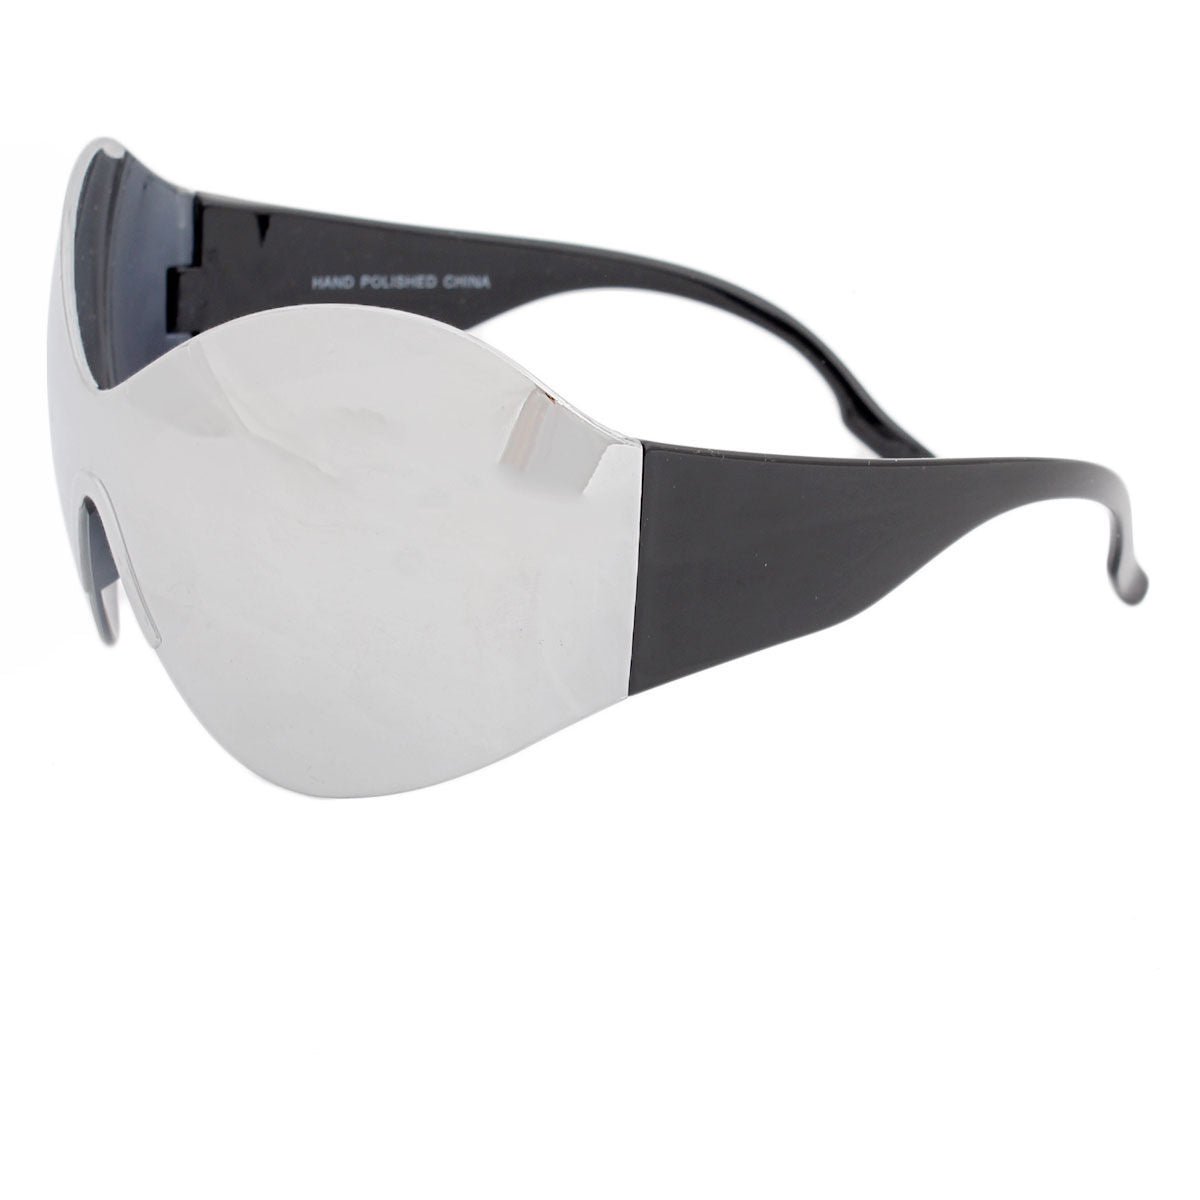 Sunglasses Butterfly Mask Silver Eyewear for Women - Bae Apparel